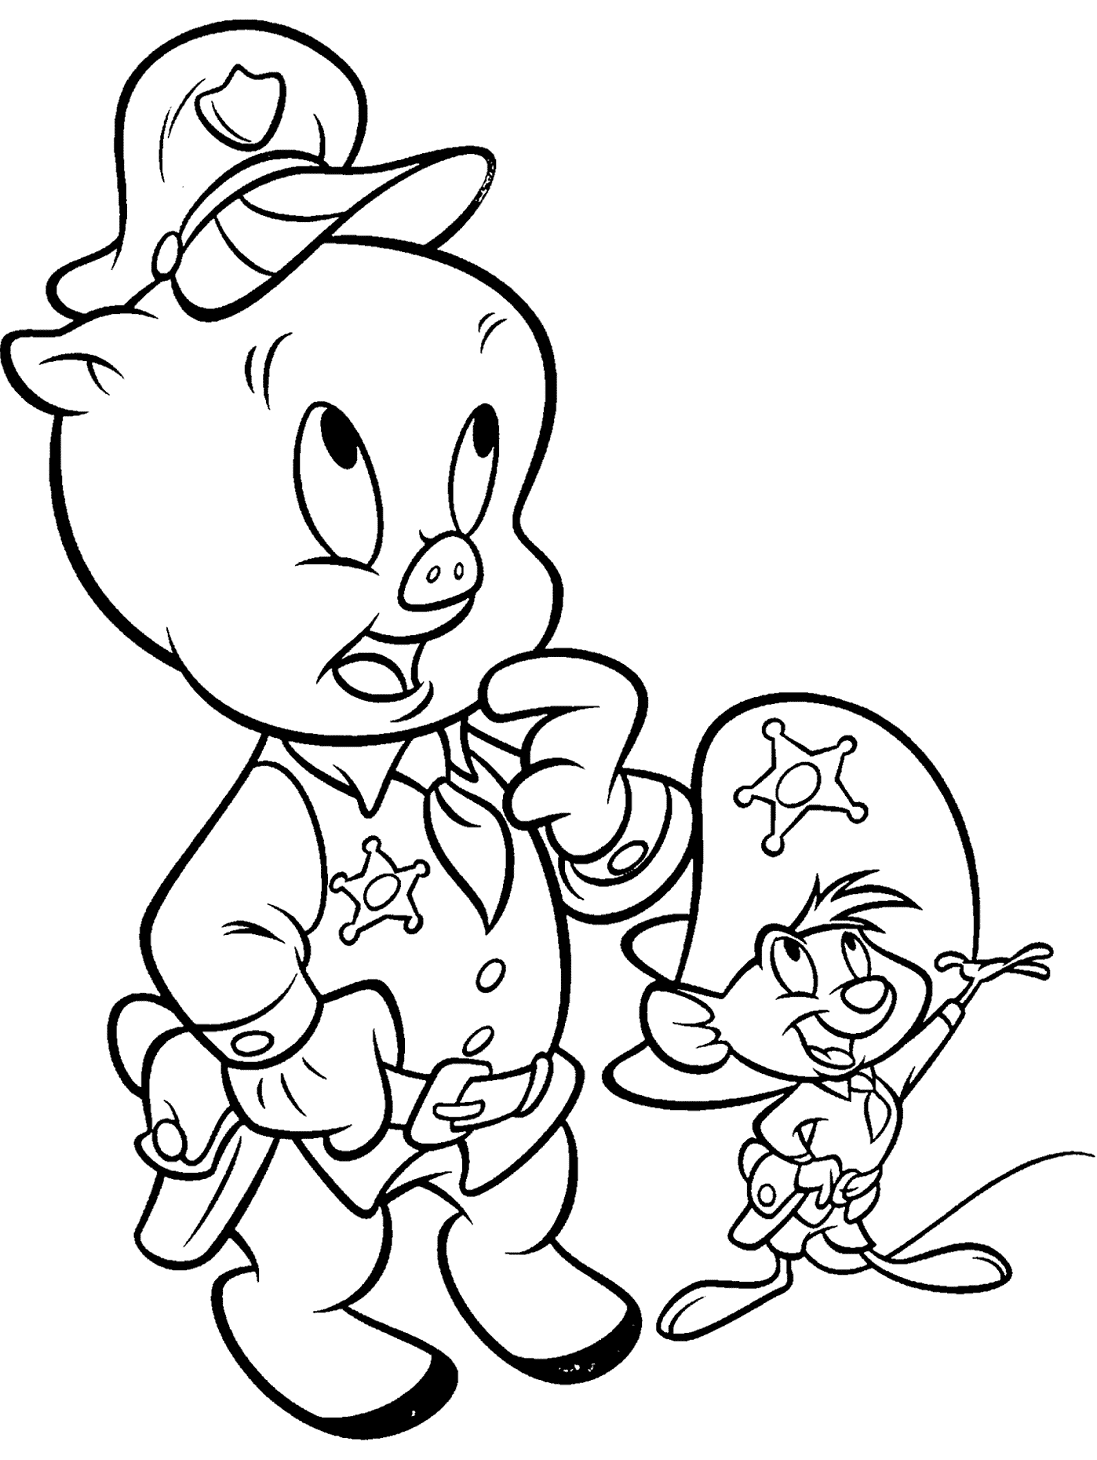 الخنزير الخنزير و سبيدي غونزاليس من شخصيات لوني تونز